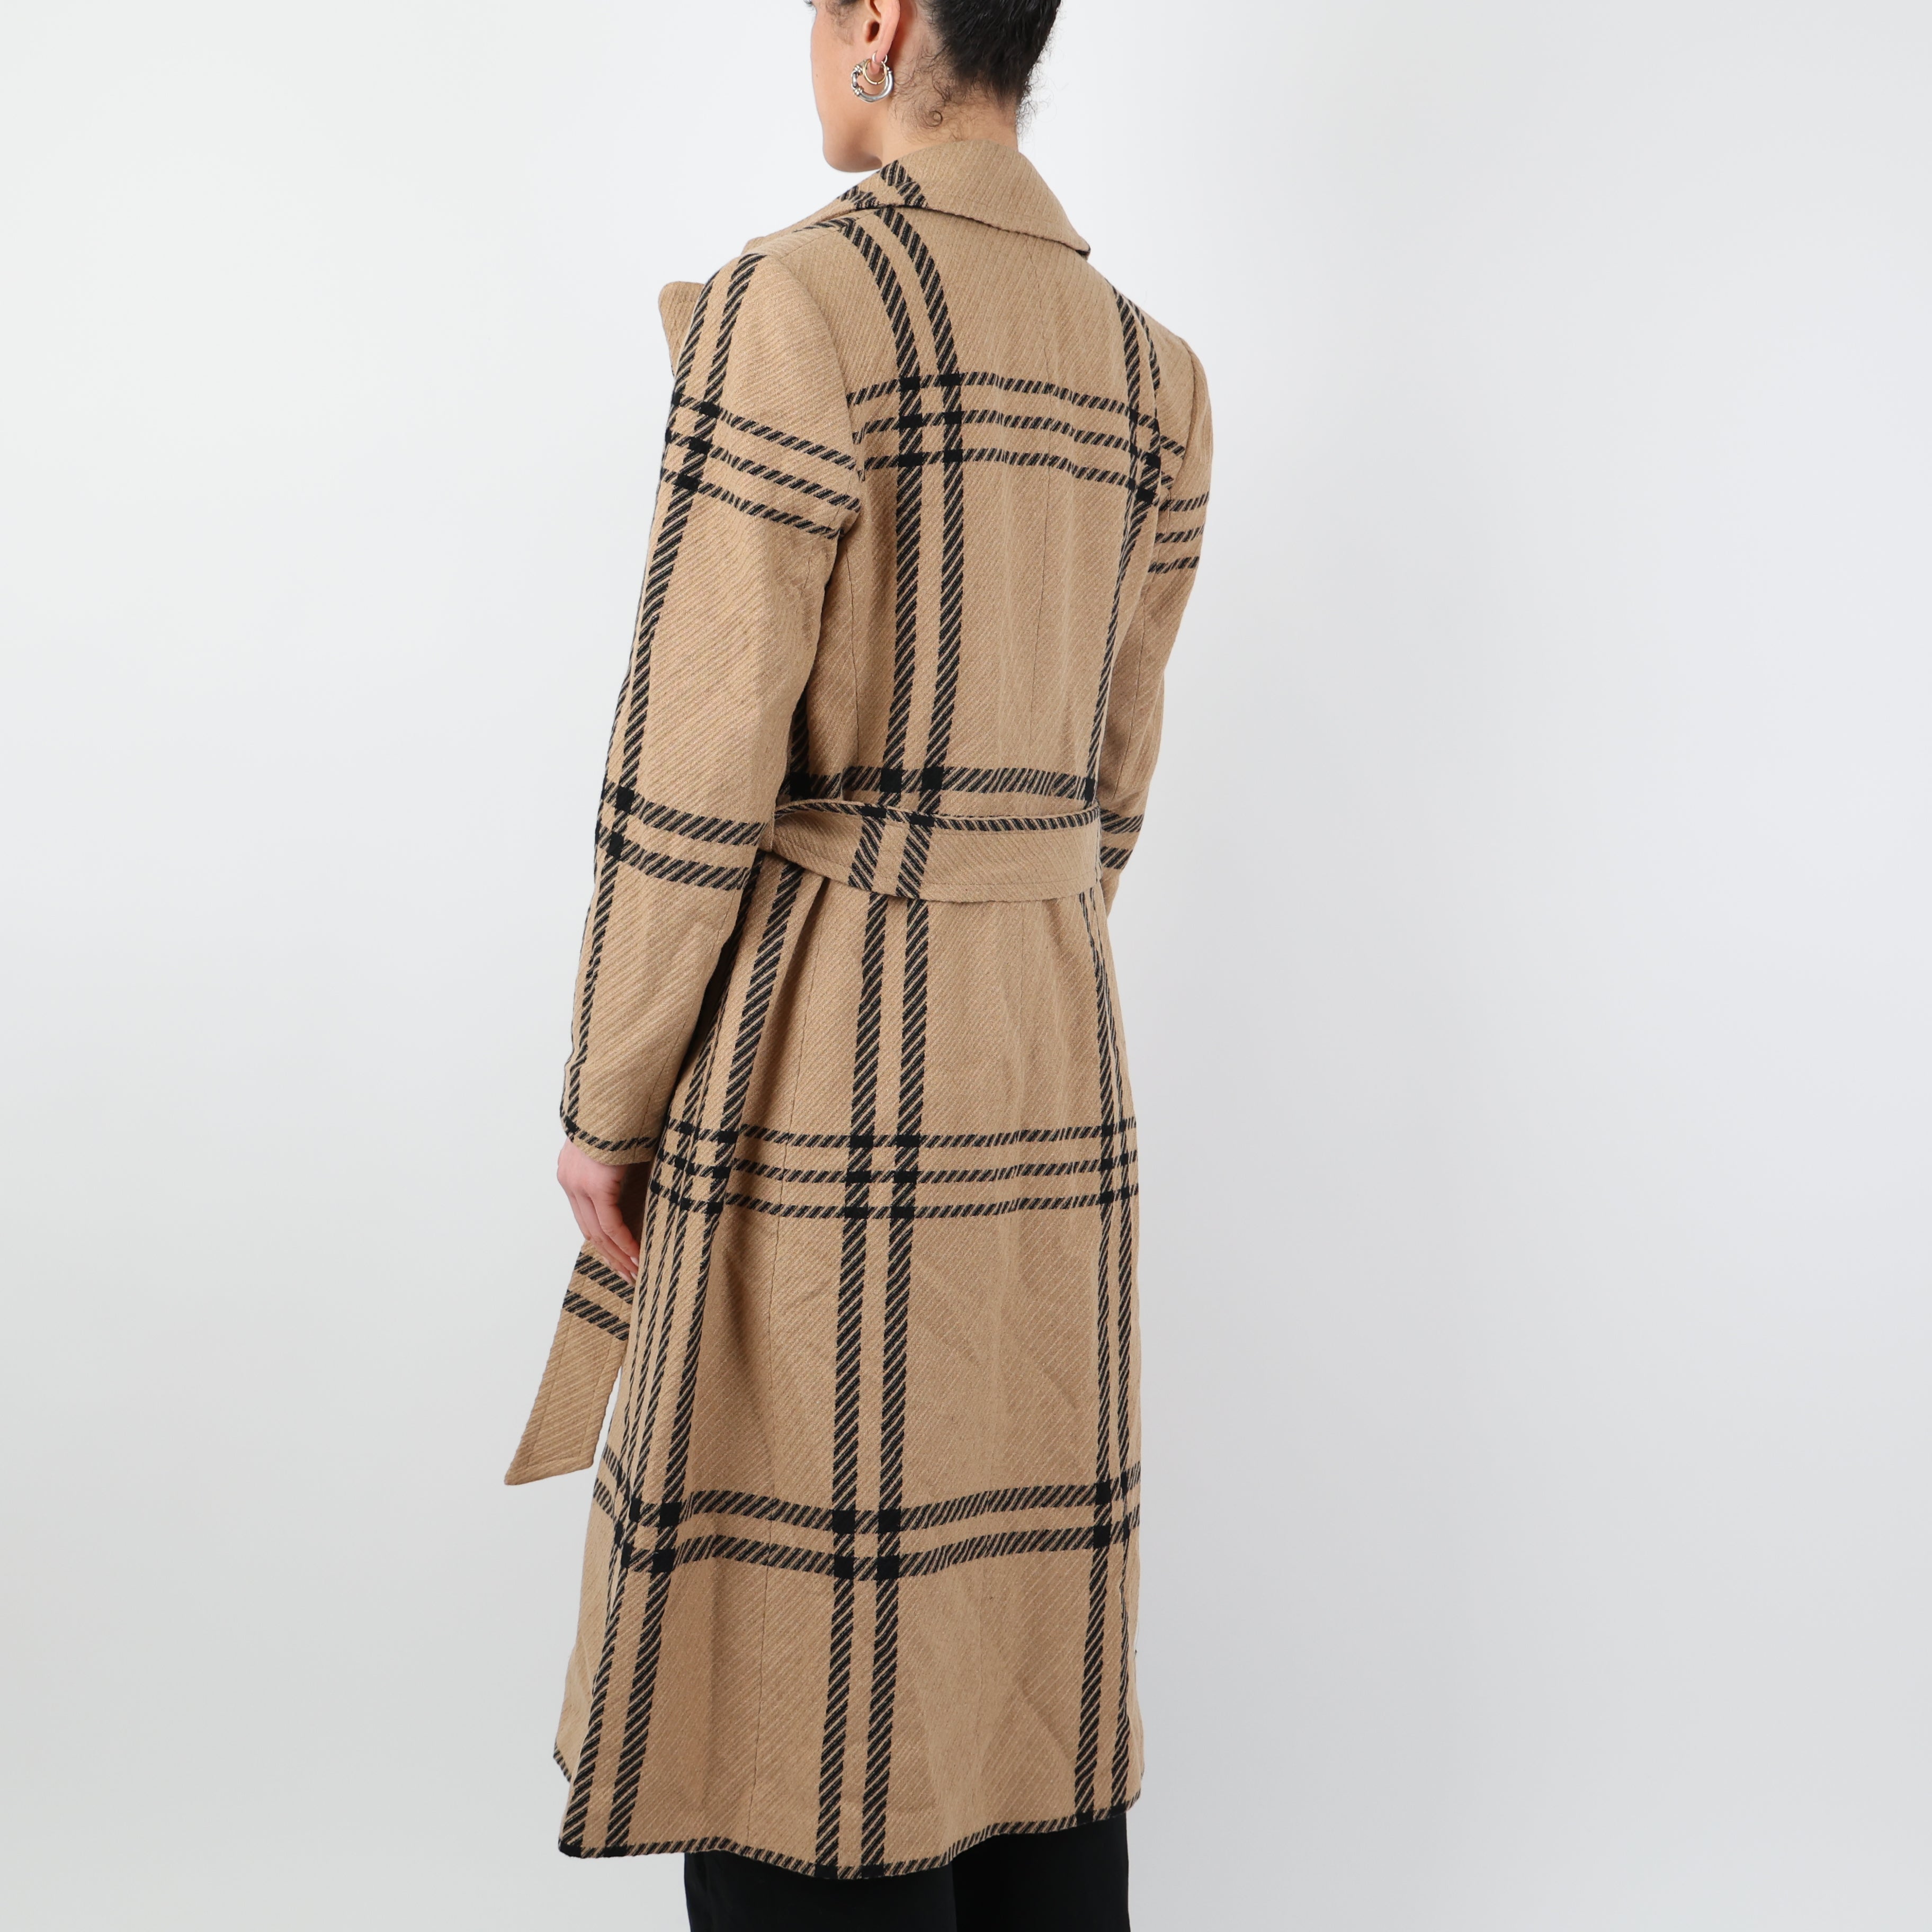 Coat, UK Size 14